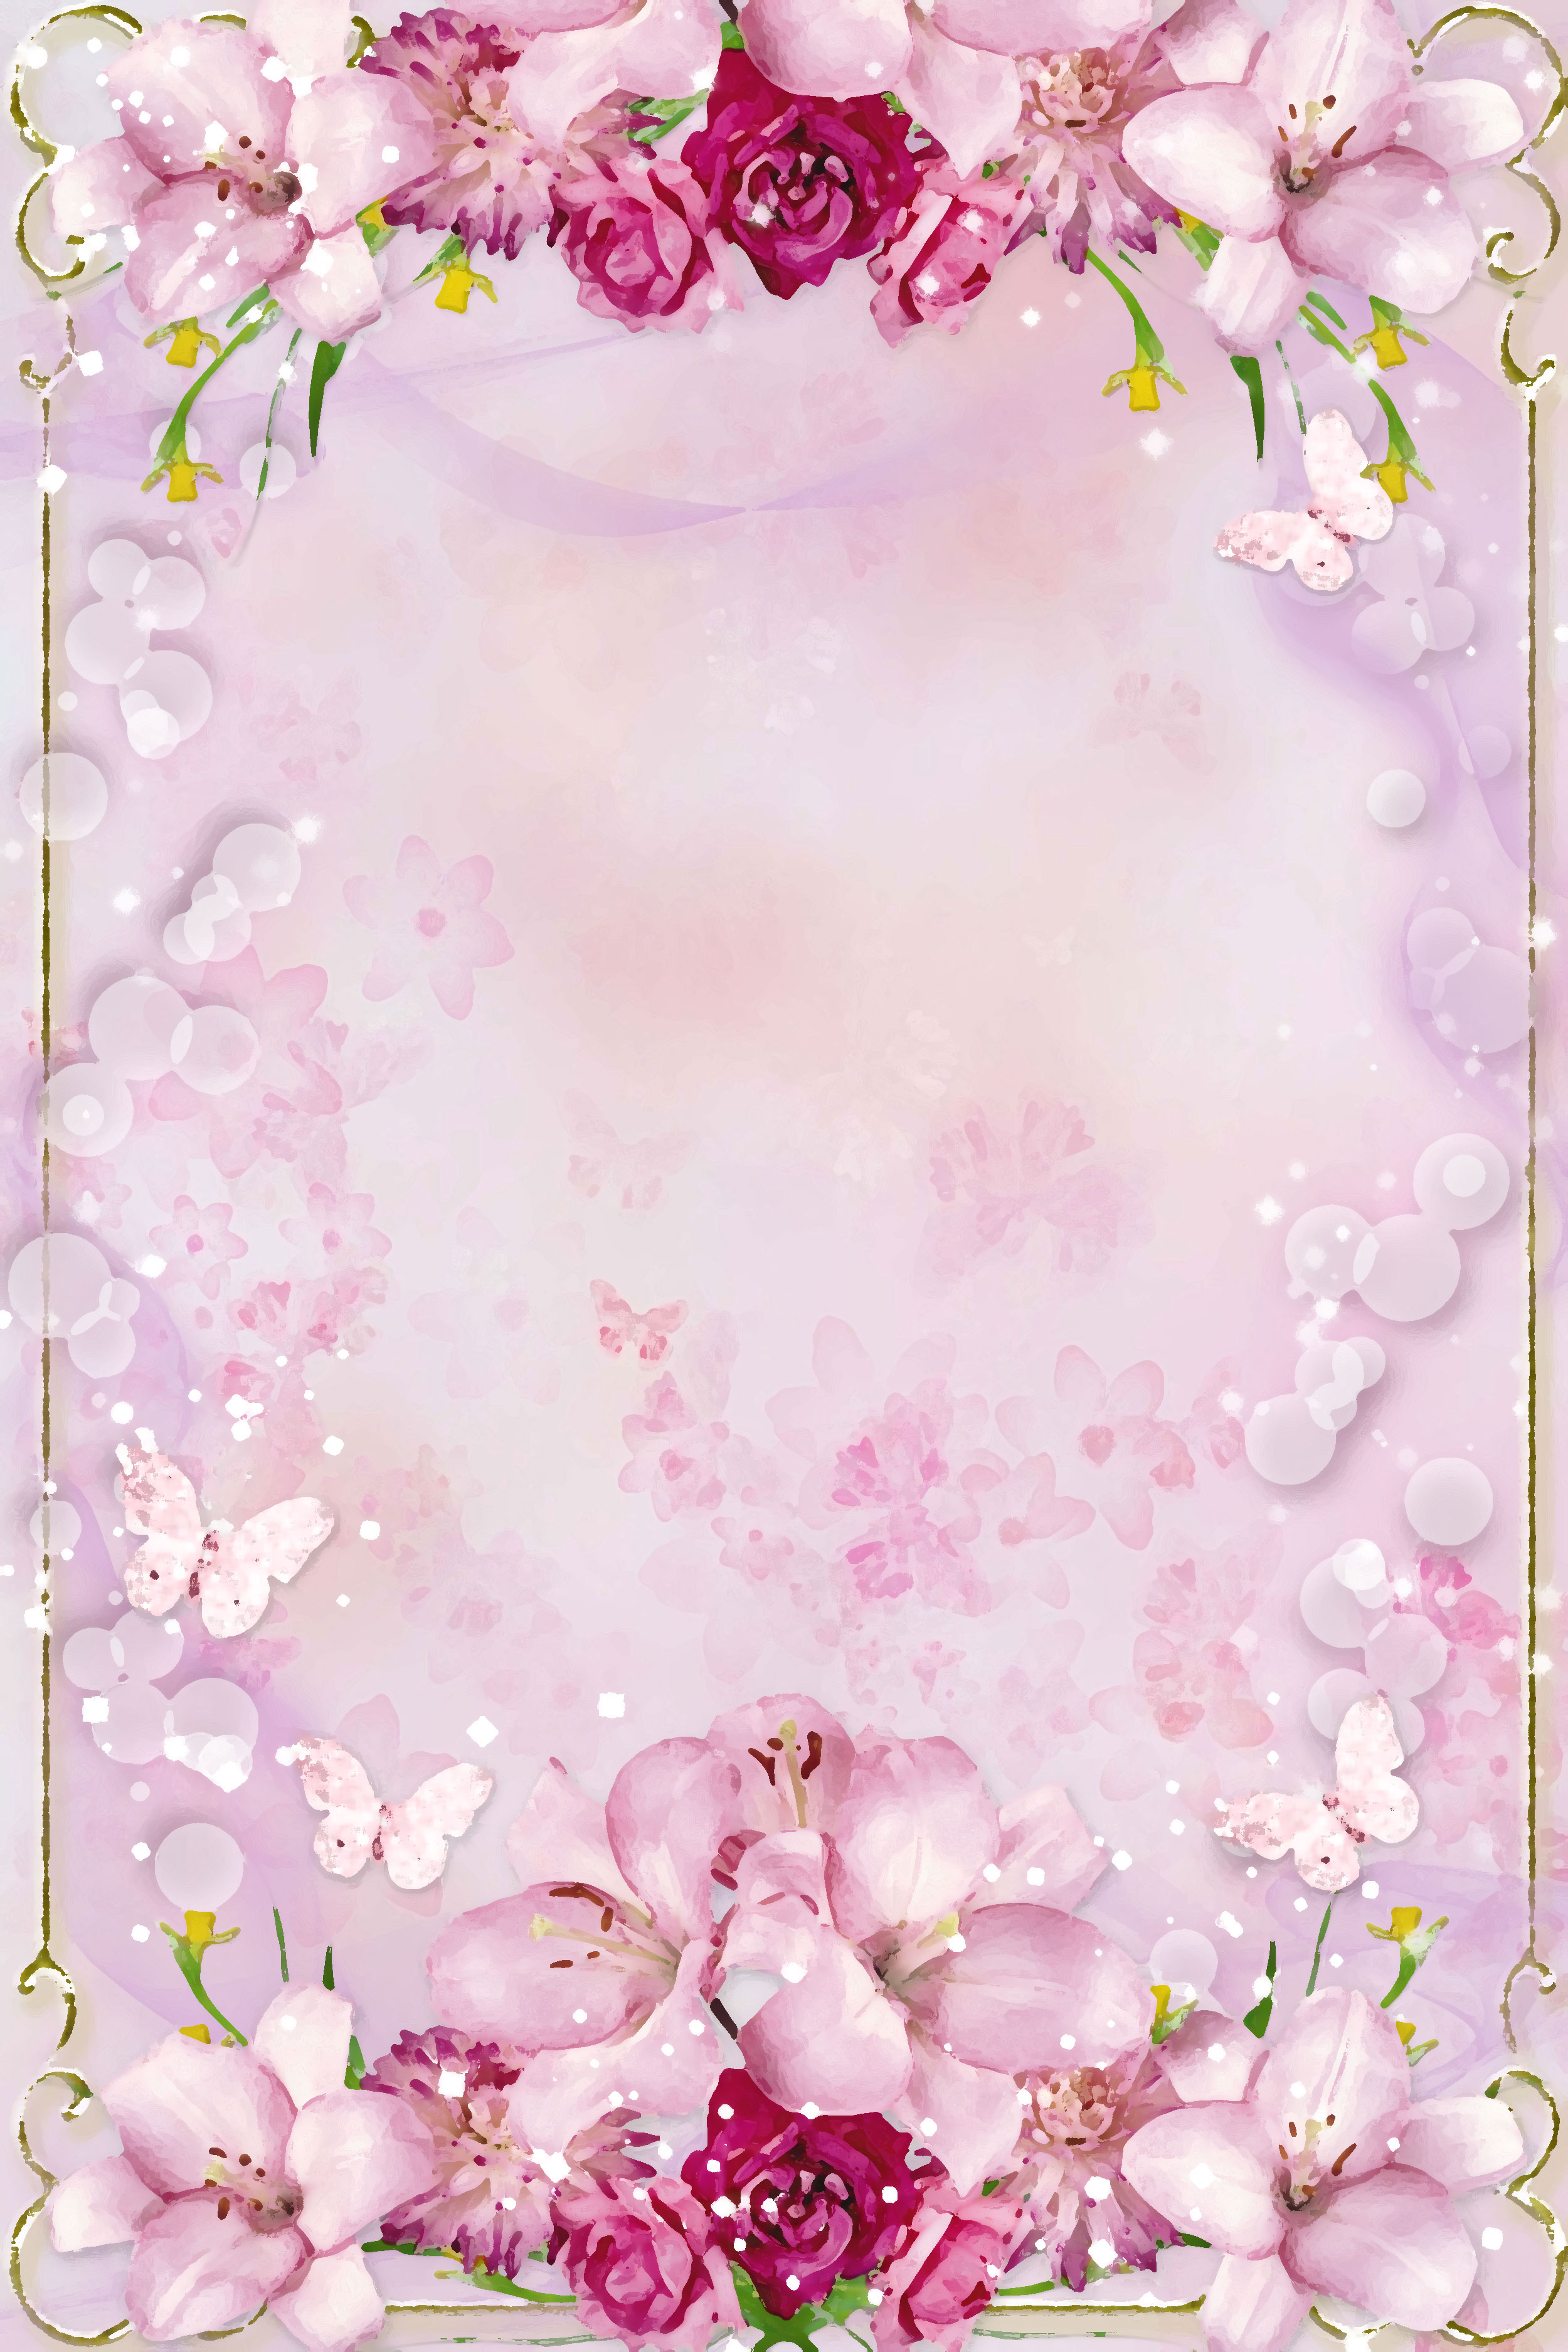 ピンクの花のイラスト フリー素材 壁紙 背景no 588 ピンク 赤紫